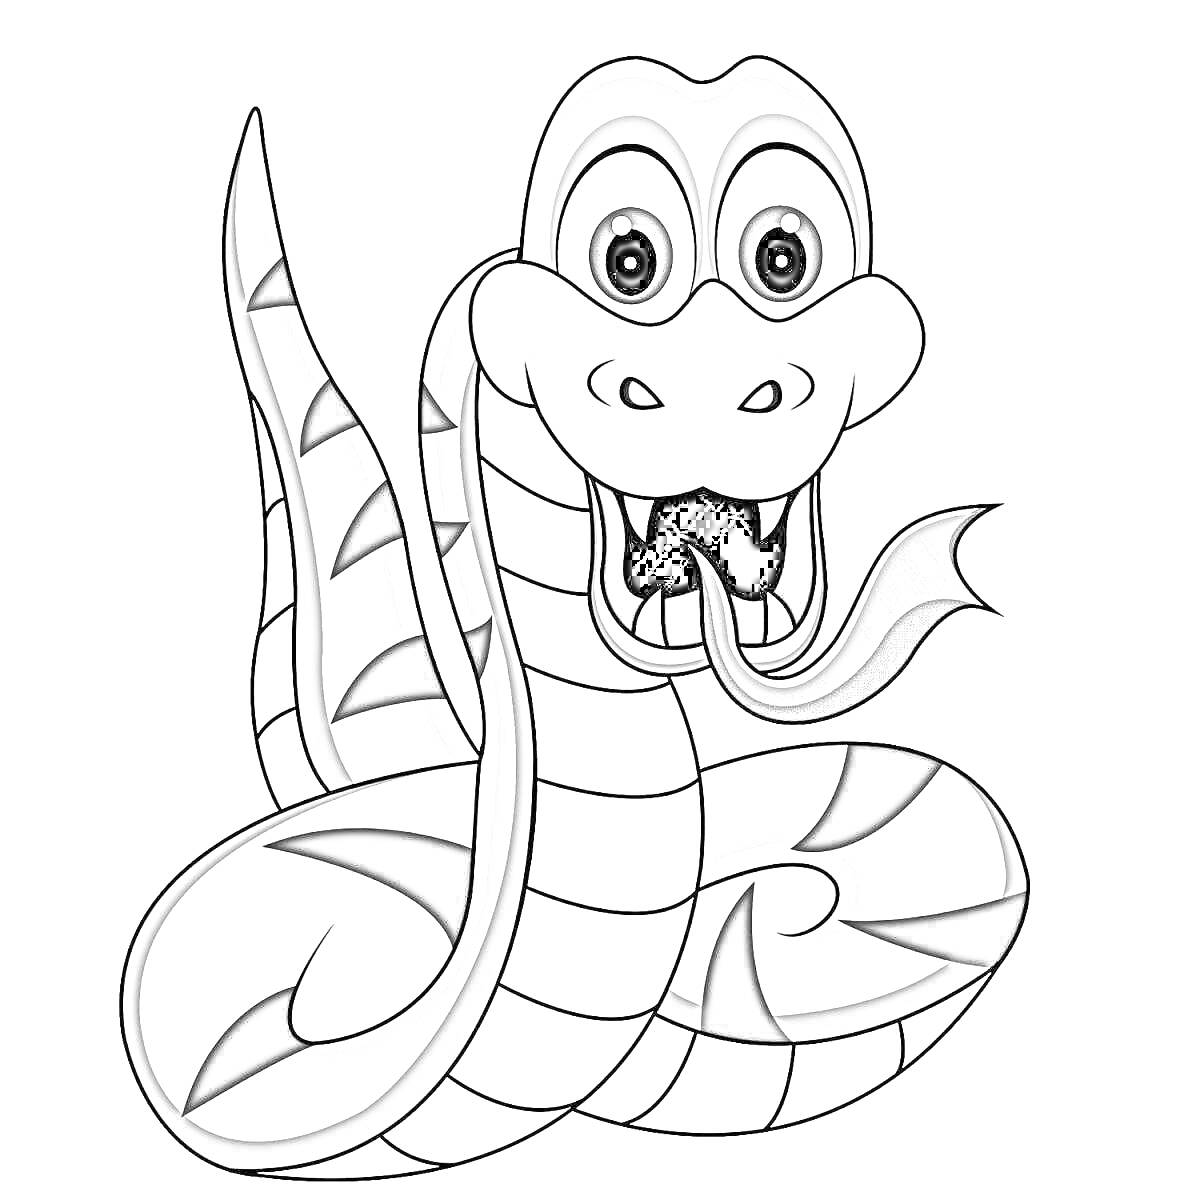 Раскраска Раскраска-рисунок улыбающейся змеи с высунутым языком и полосатым телом для детей